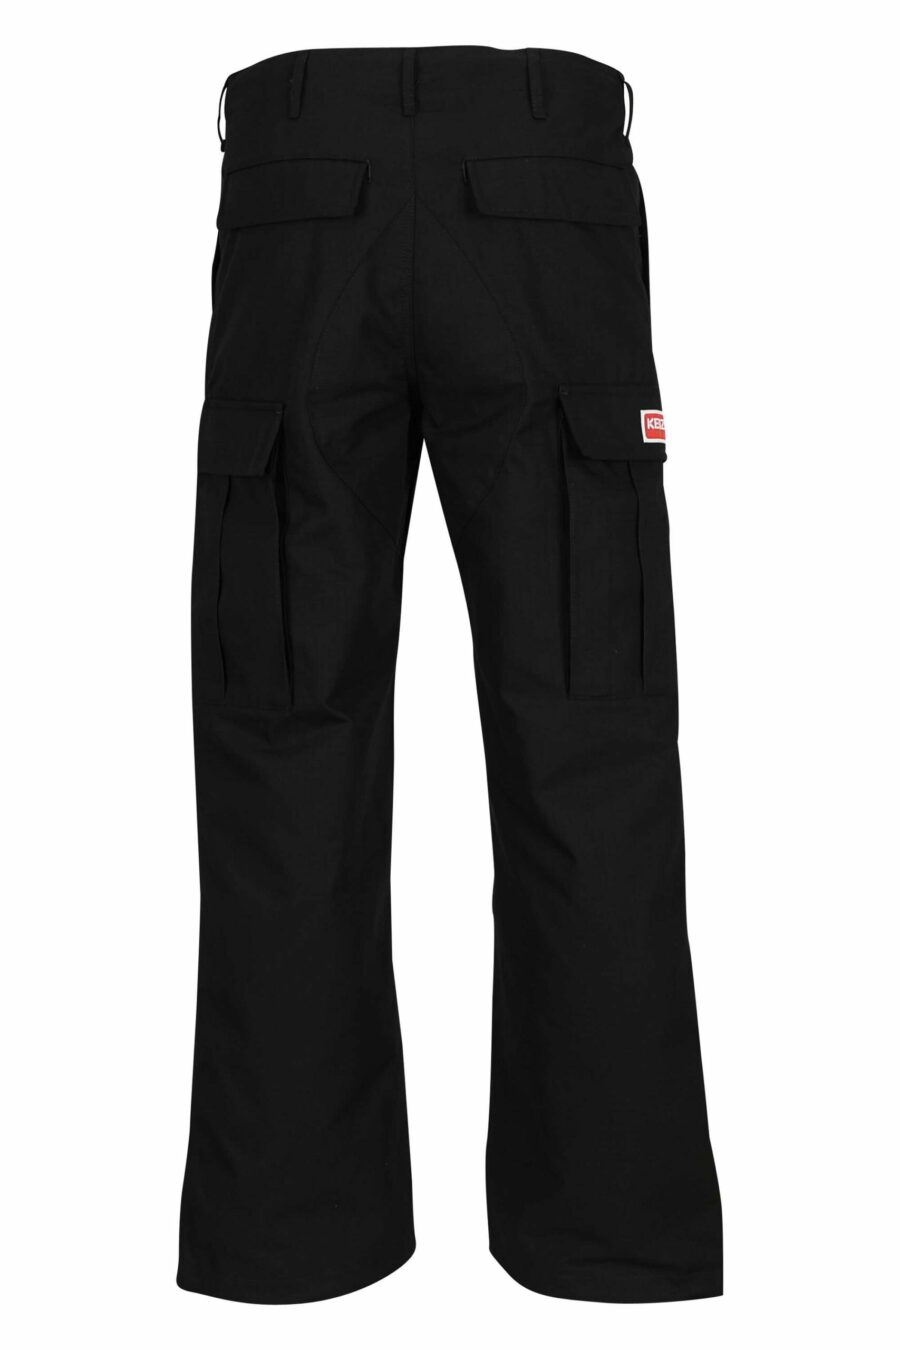 Pantalón negro estilo cargo con logo "boke flower" - 3612230618855 2 scaled